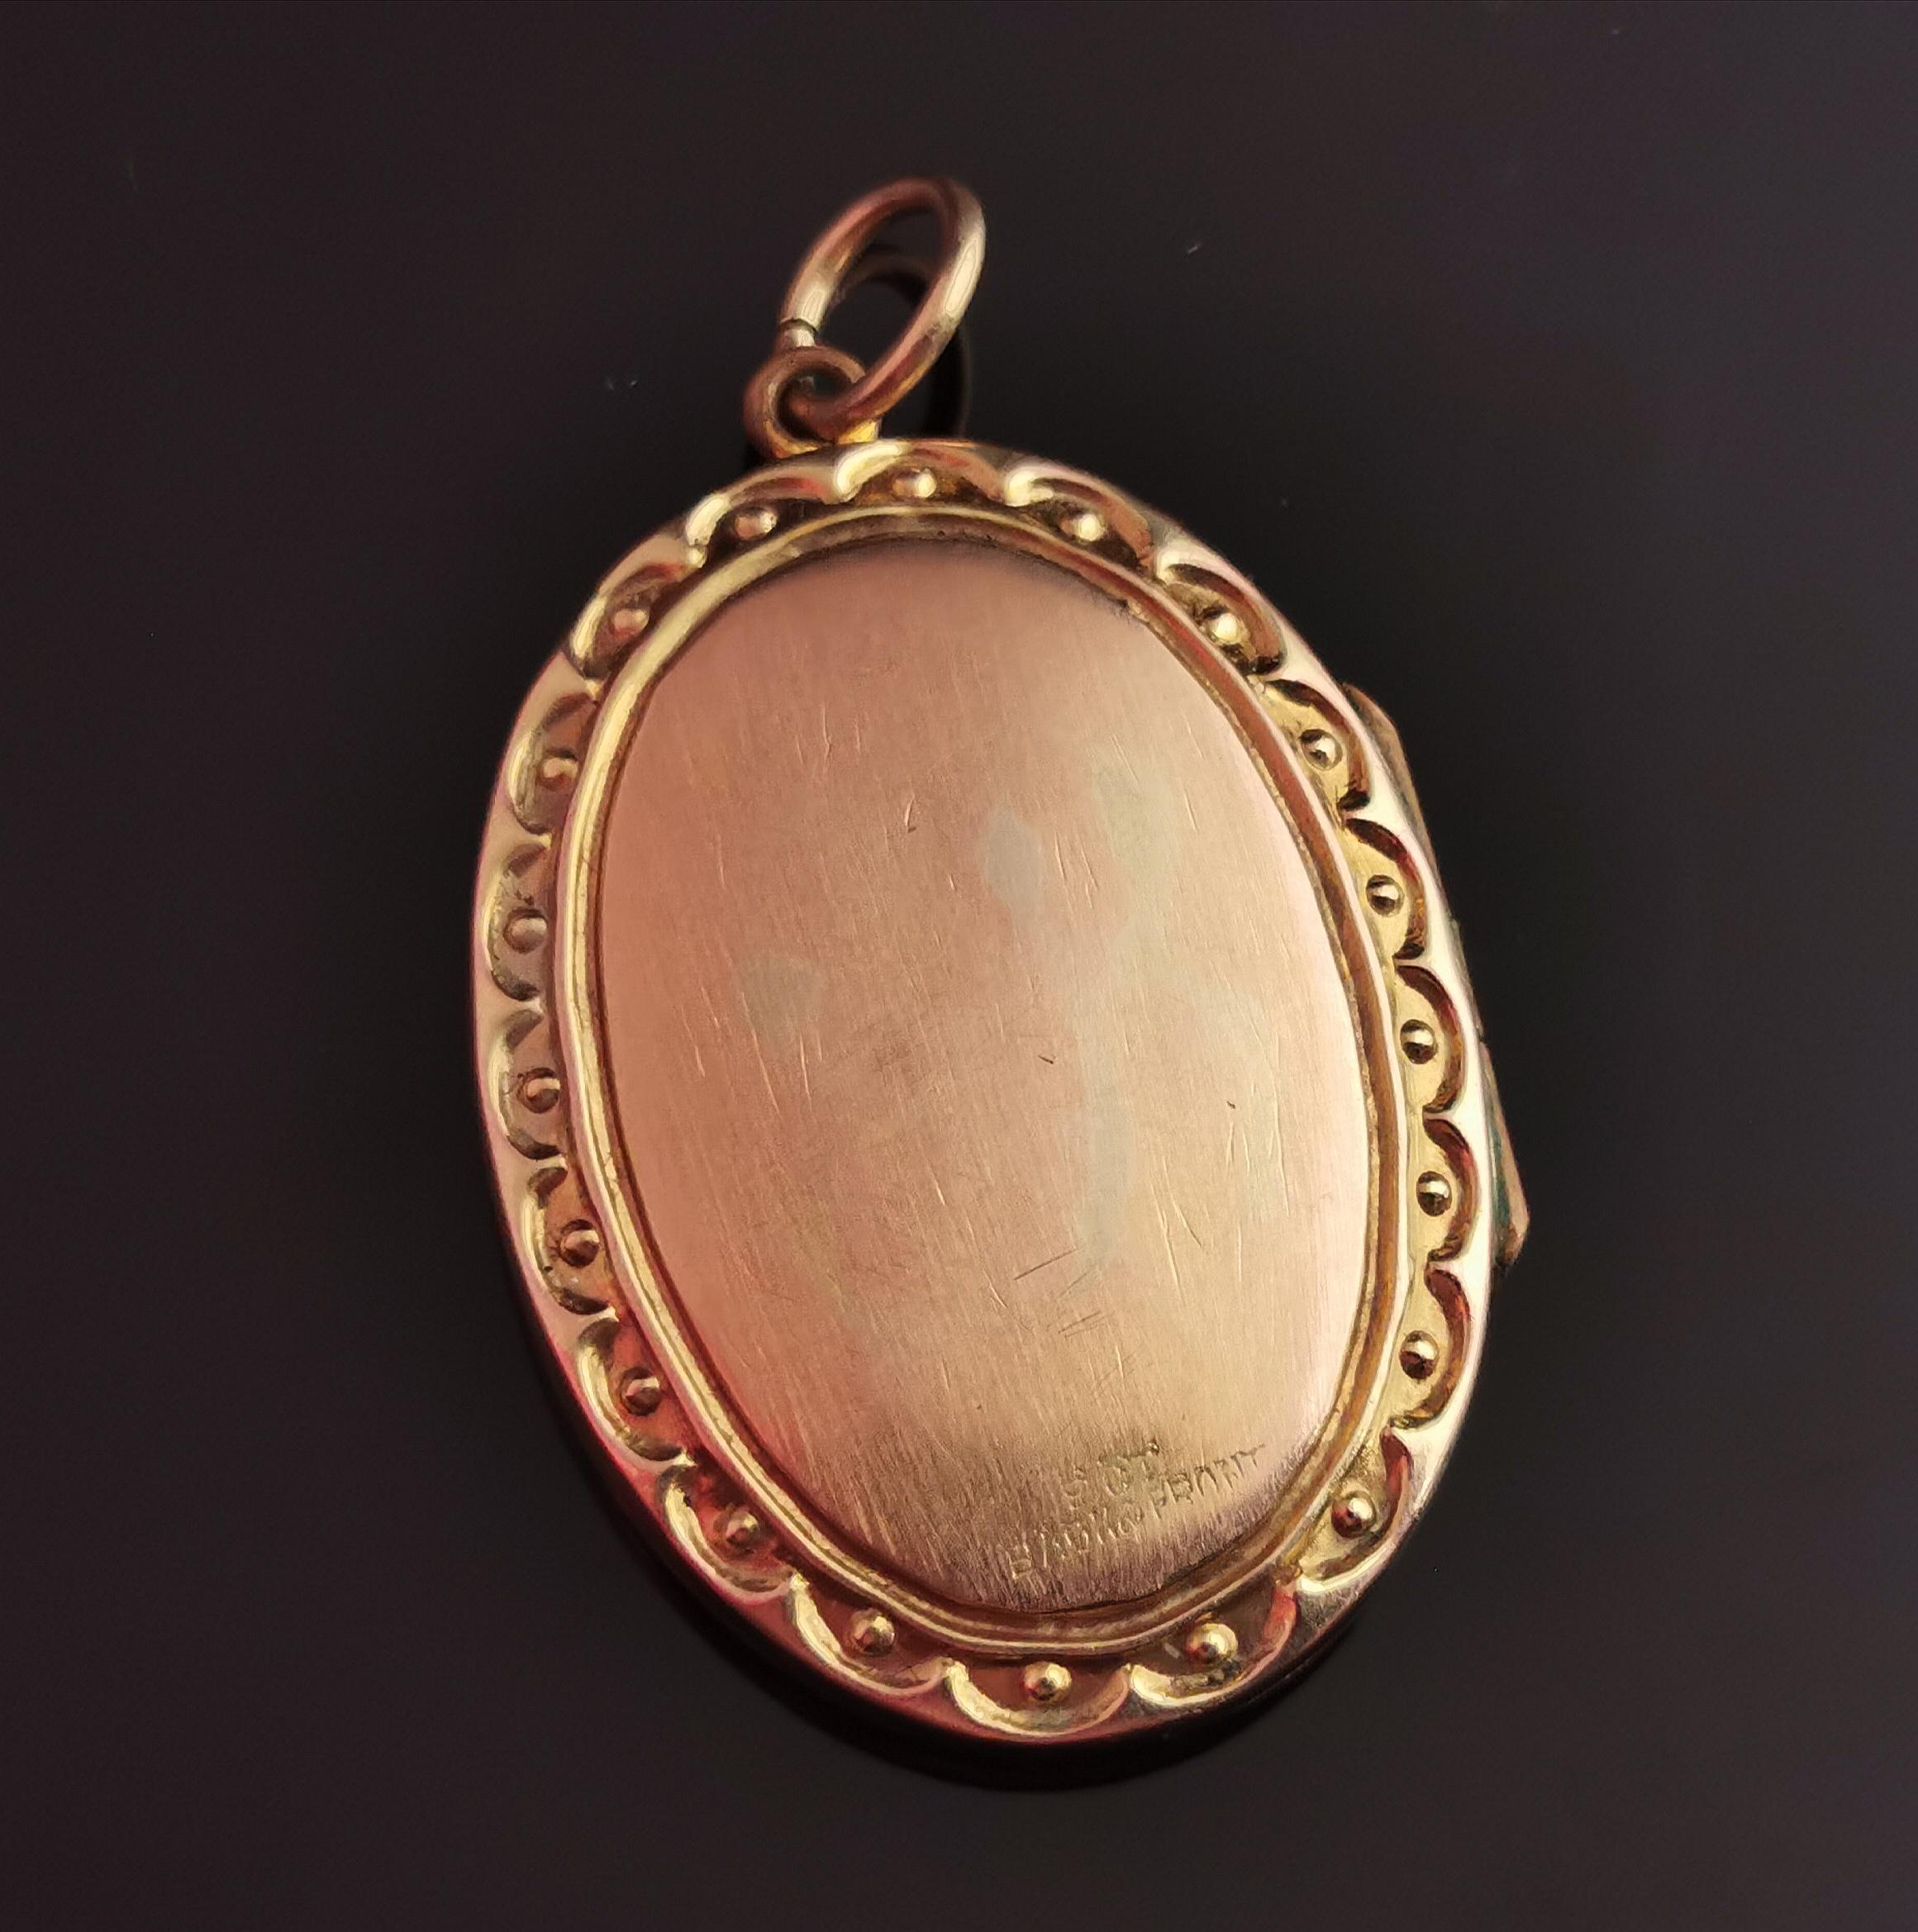 Antique Edwardian 9k gold front and back locket pendant, engraved  2